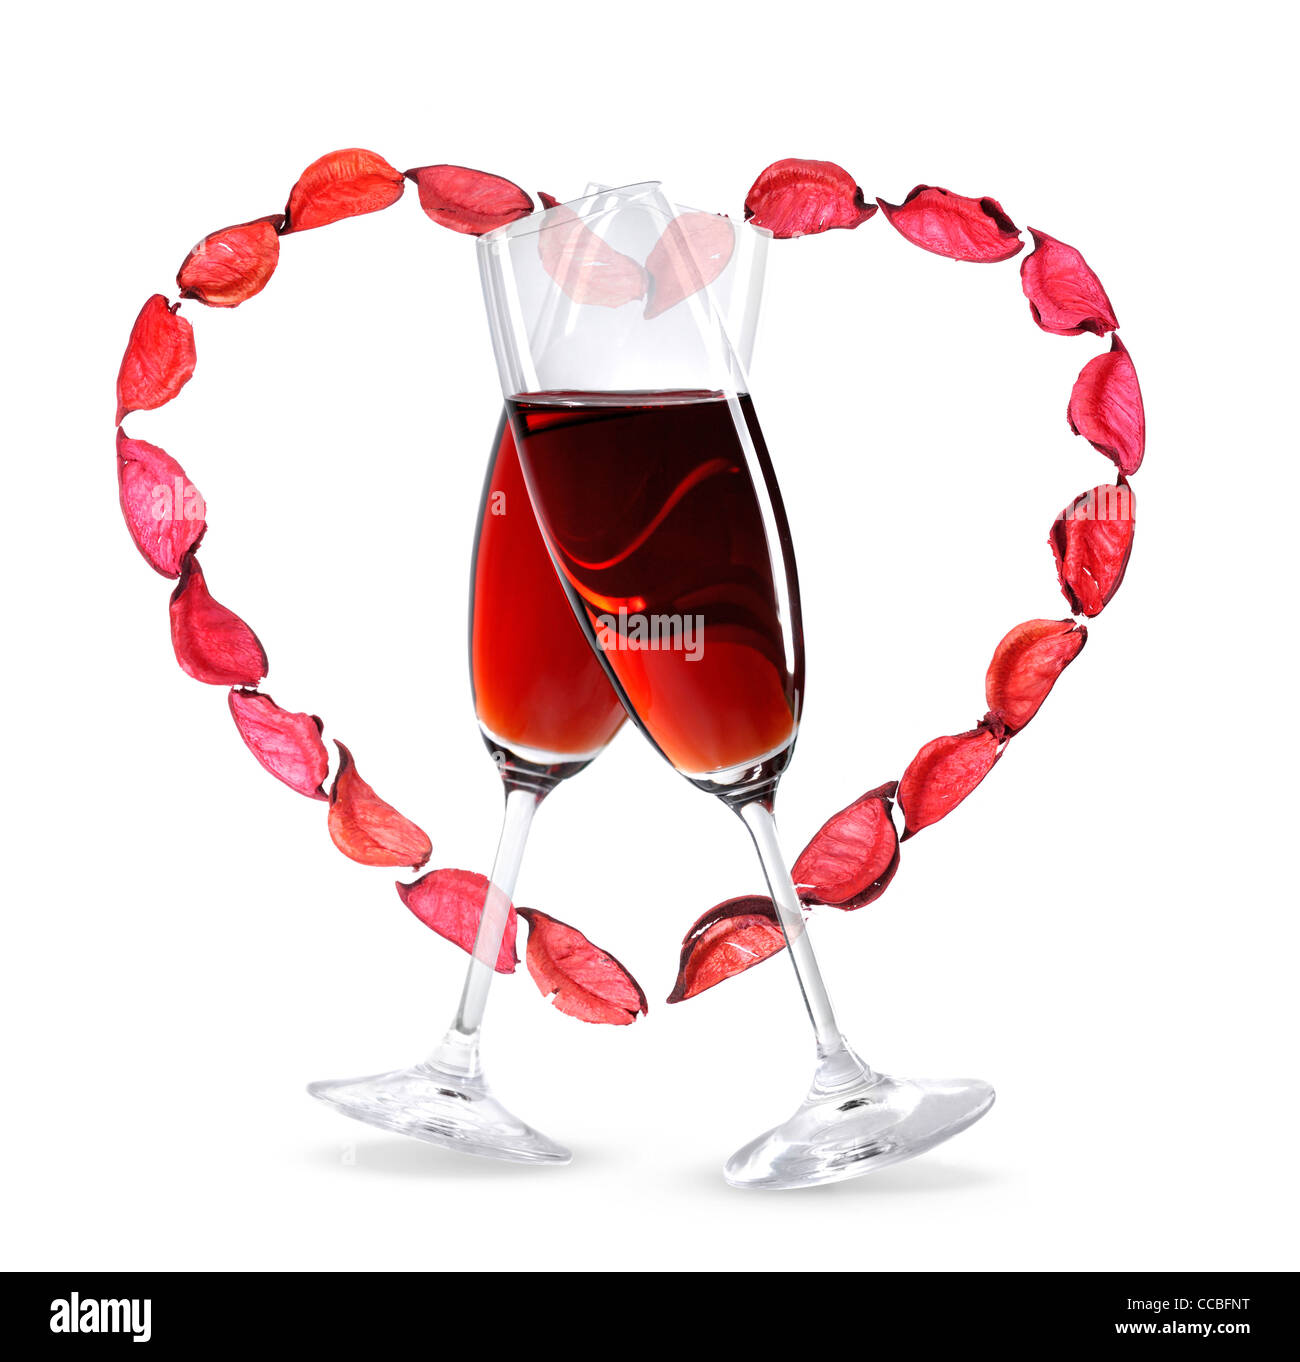 Deux wineglasses avec du vin rouge et un cœur à base de pétales de rose. Banque D'Images